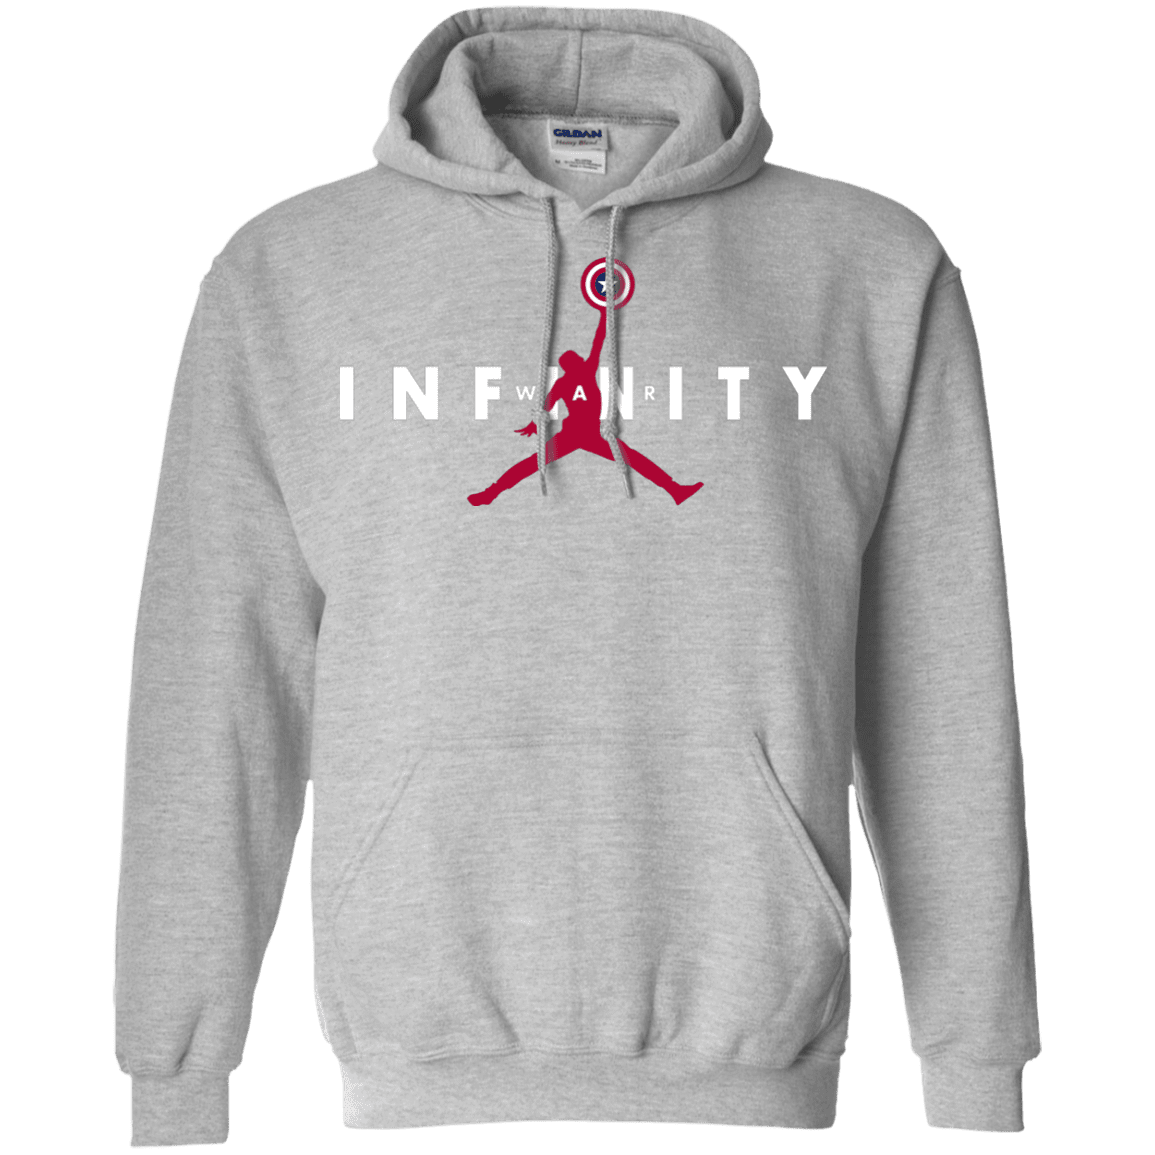 Sweatshirts Sport Grey / S Infinity Air Pullover Hoodie